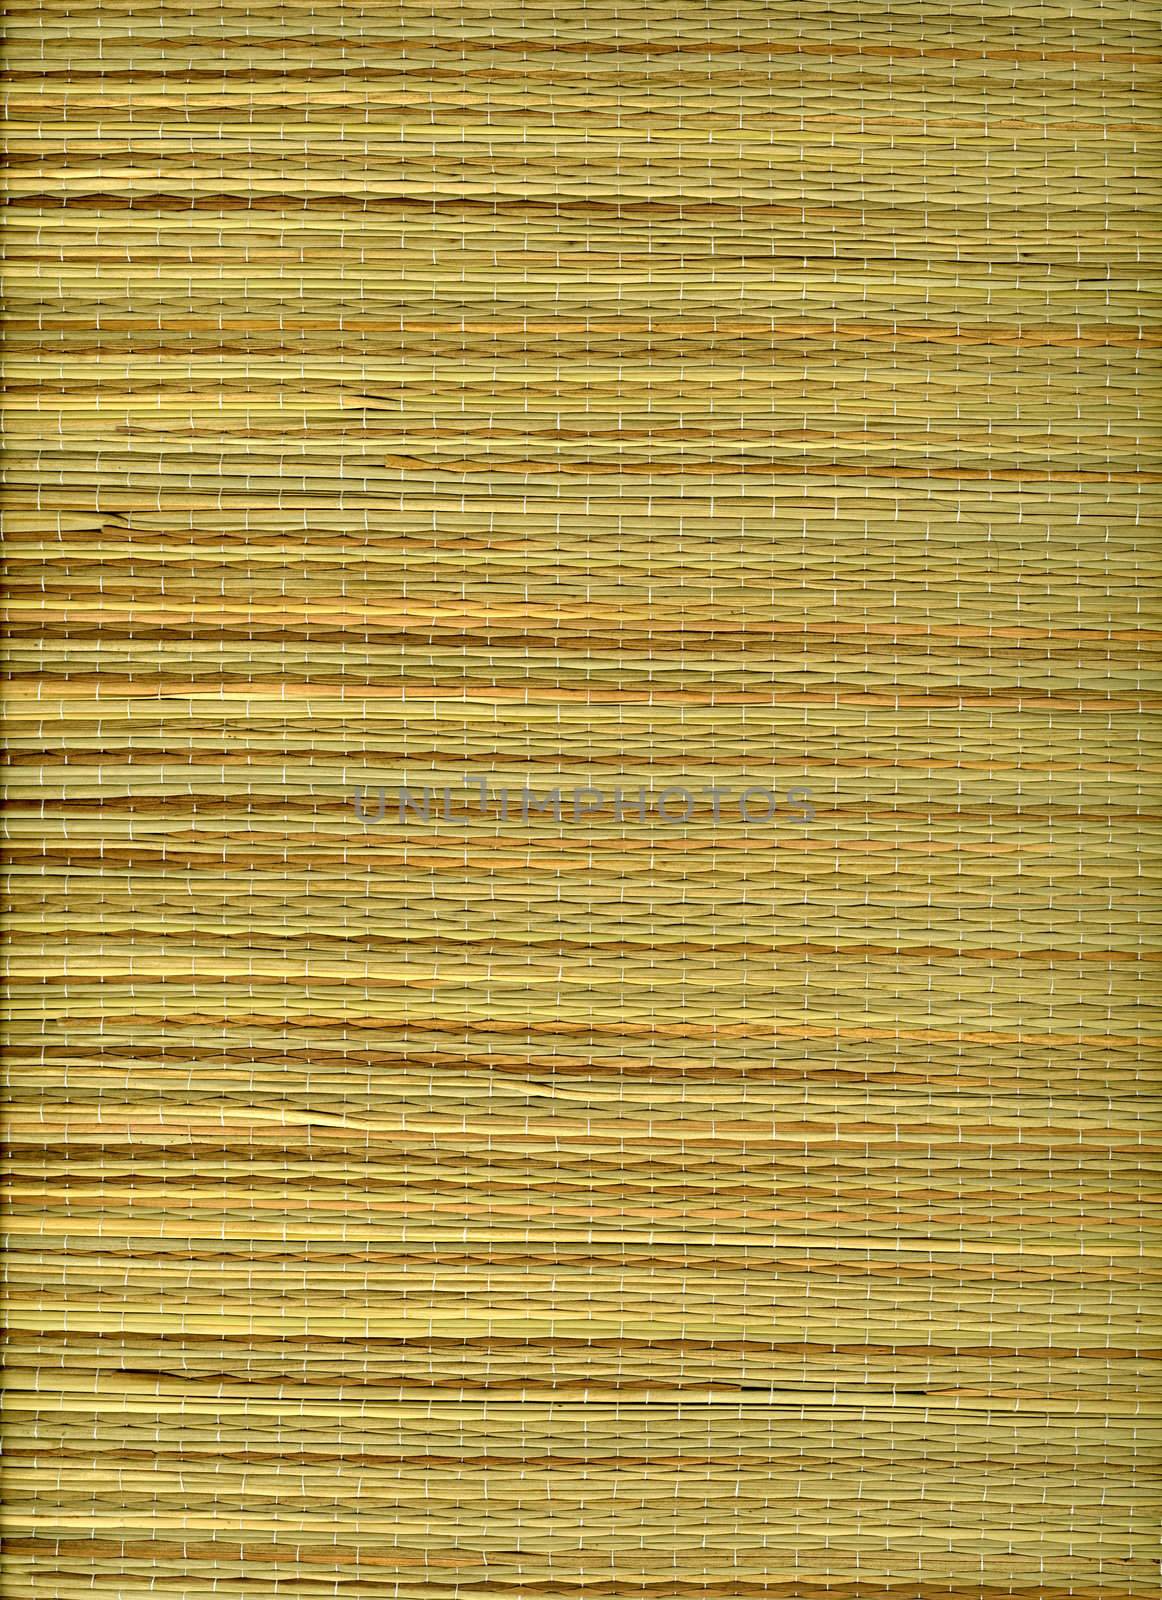 grass mat texture by PixelsAway